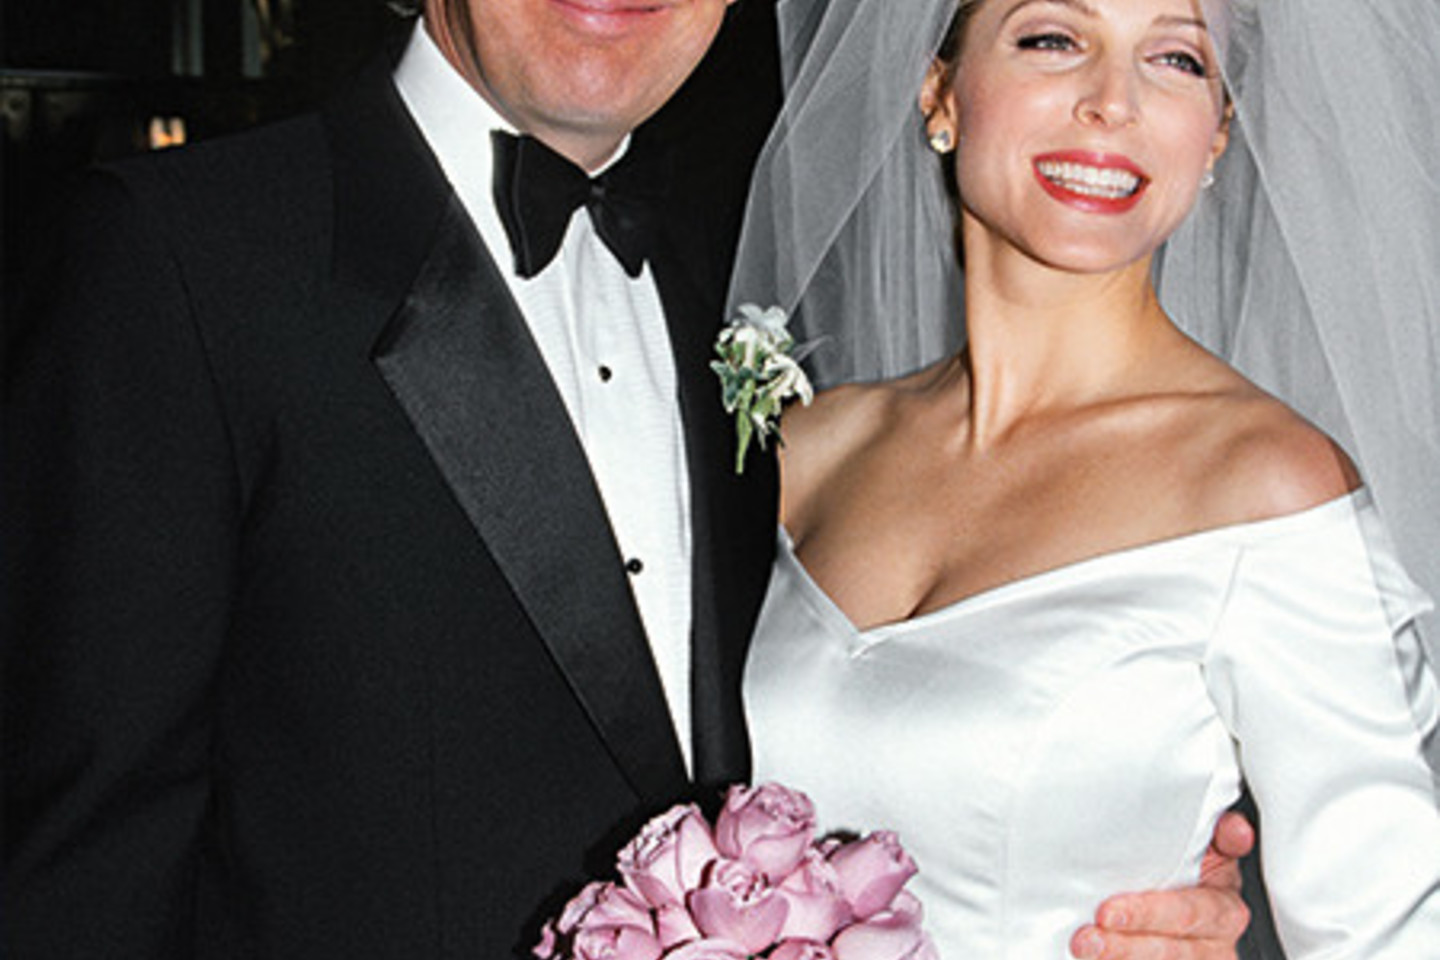 D.Trumpas su antrąja žmona Marla 1993 m. Su M.Maples Donaldas sudarė griežtą vedybų sutartį. Galiausiai per skyrybas ji gavo tik apie du milijonus dolerių.